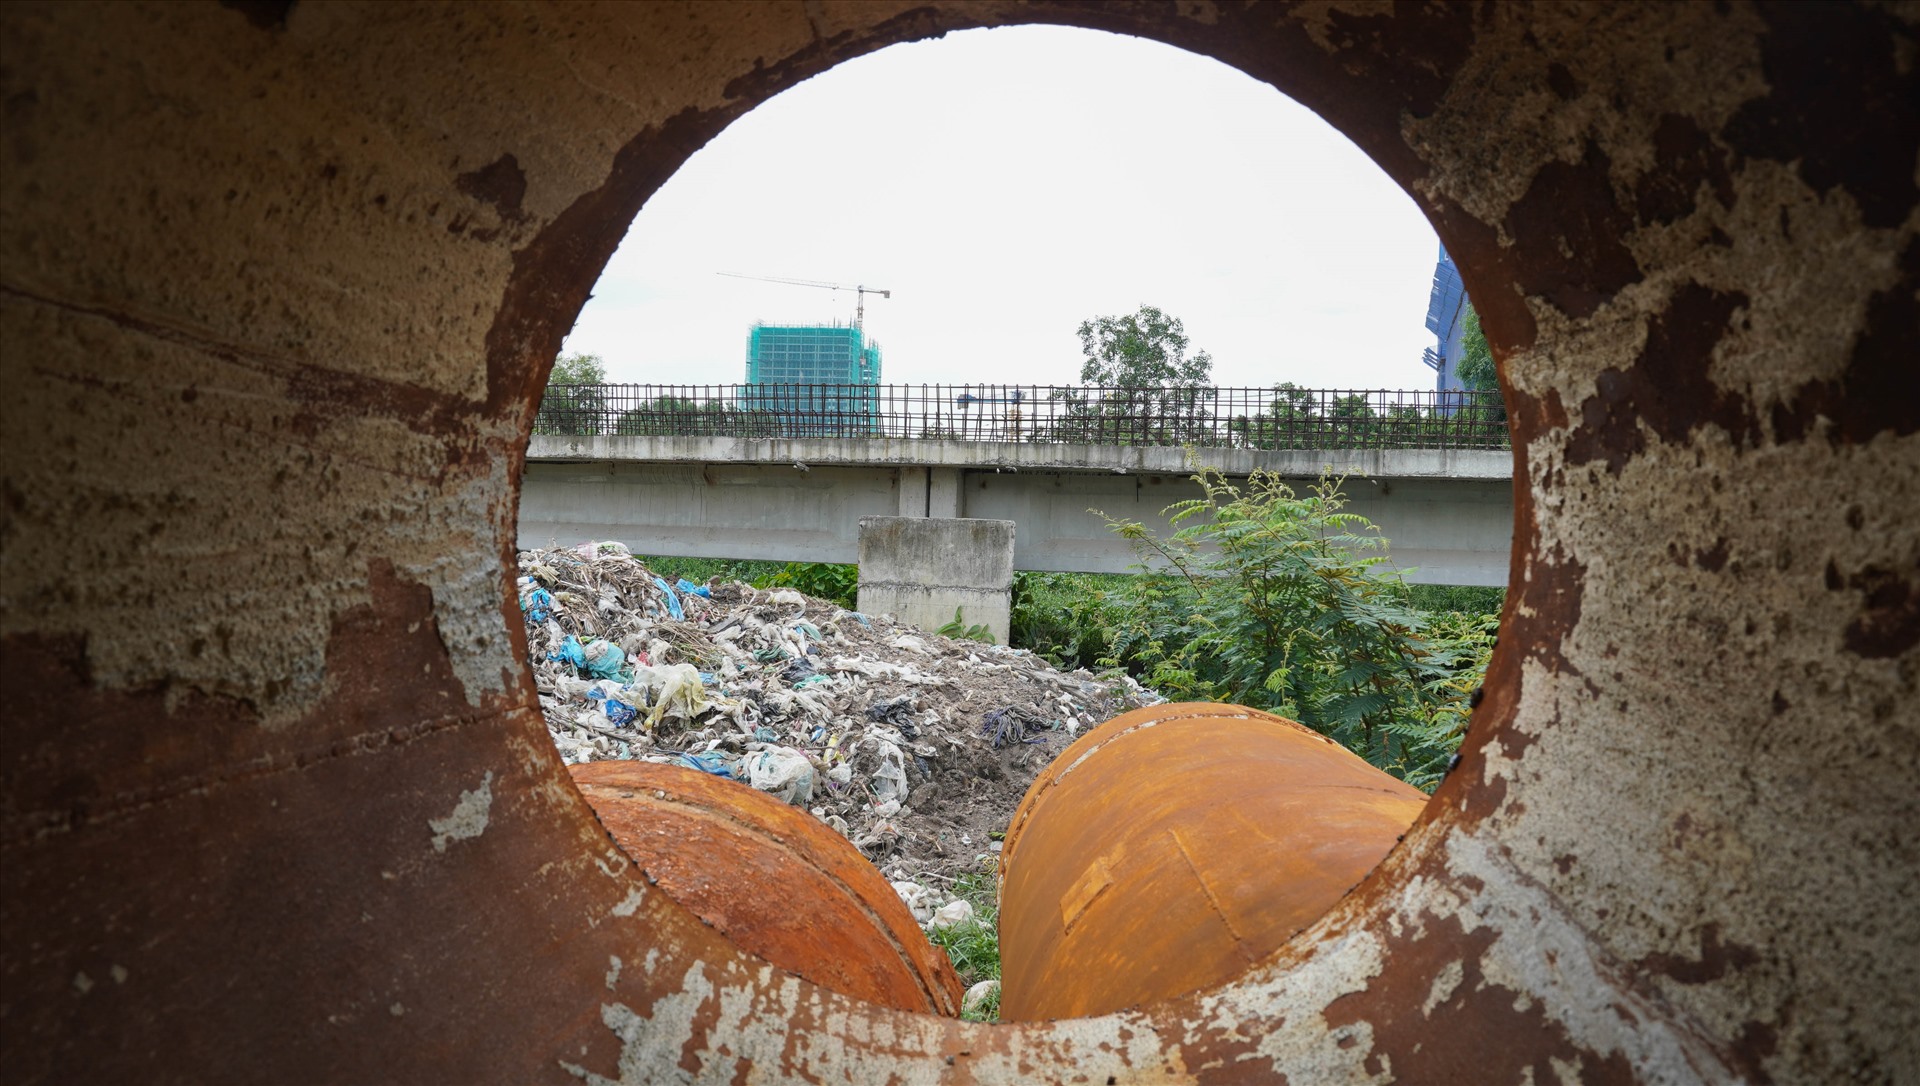 Nhiều người vô ý thức đã “biến” công trình dự án này thành nơi đổ rác thải.